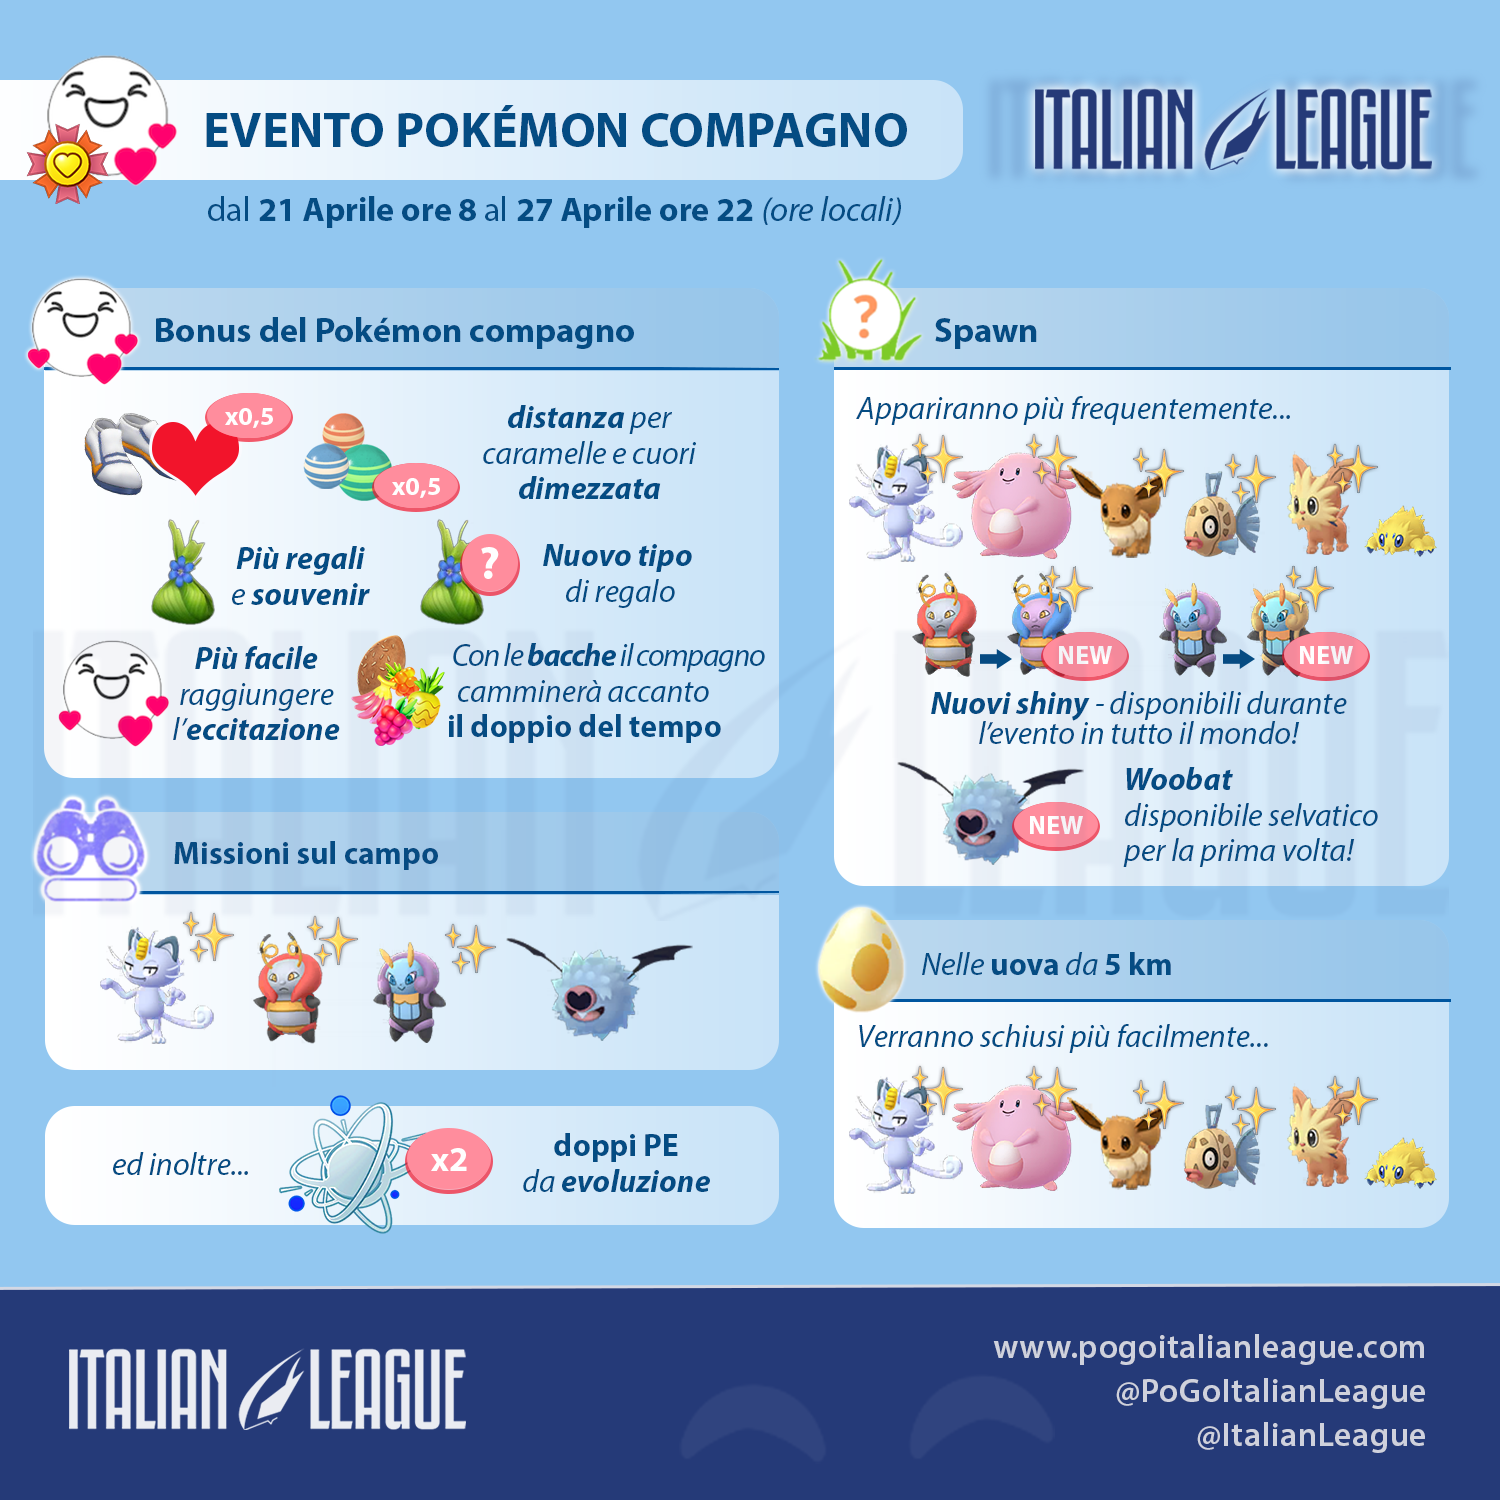 Infografica riassuntiva dell'evento Pokémon compagno